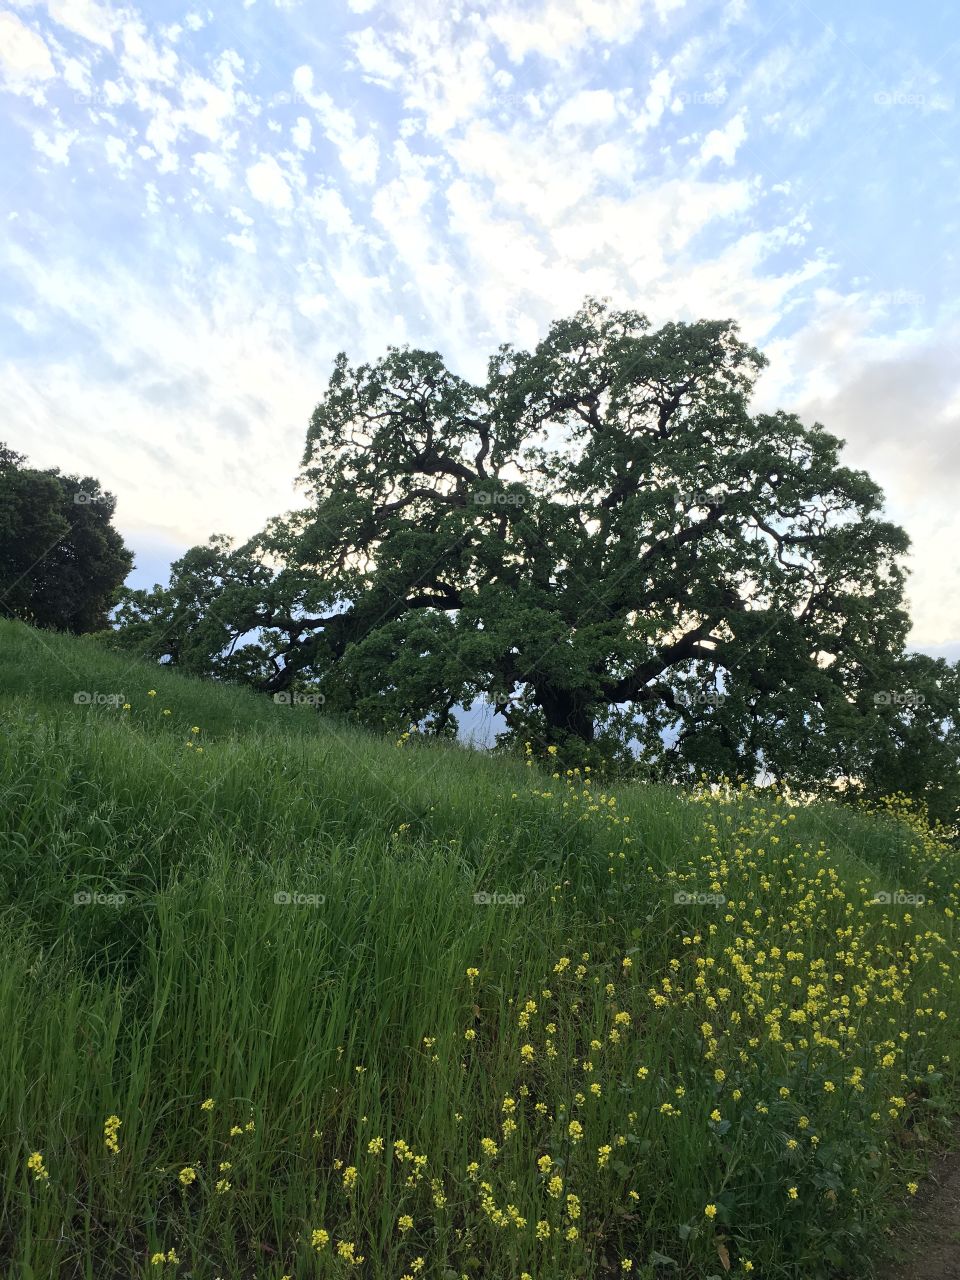 California oak